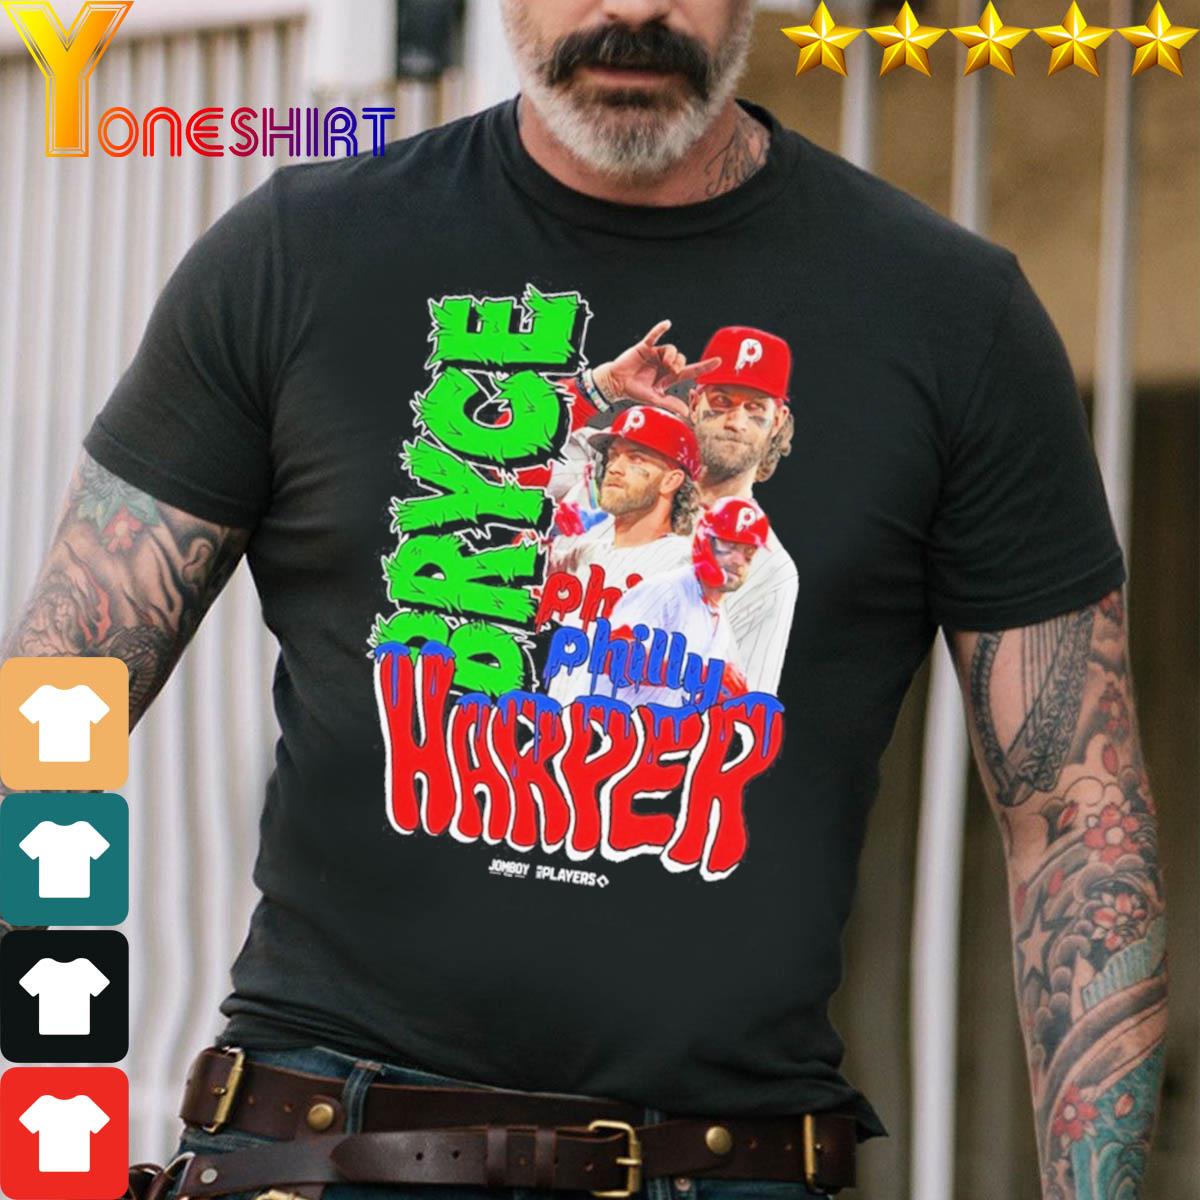 Bryce Harper Philly's Chosen One Shirt